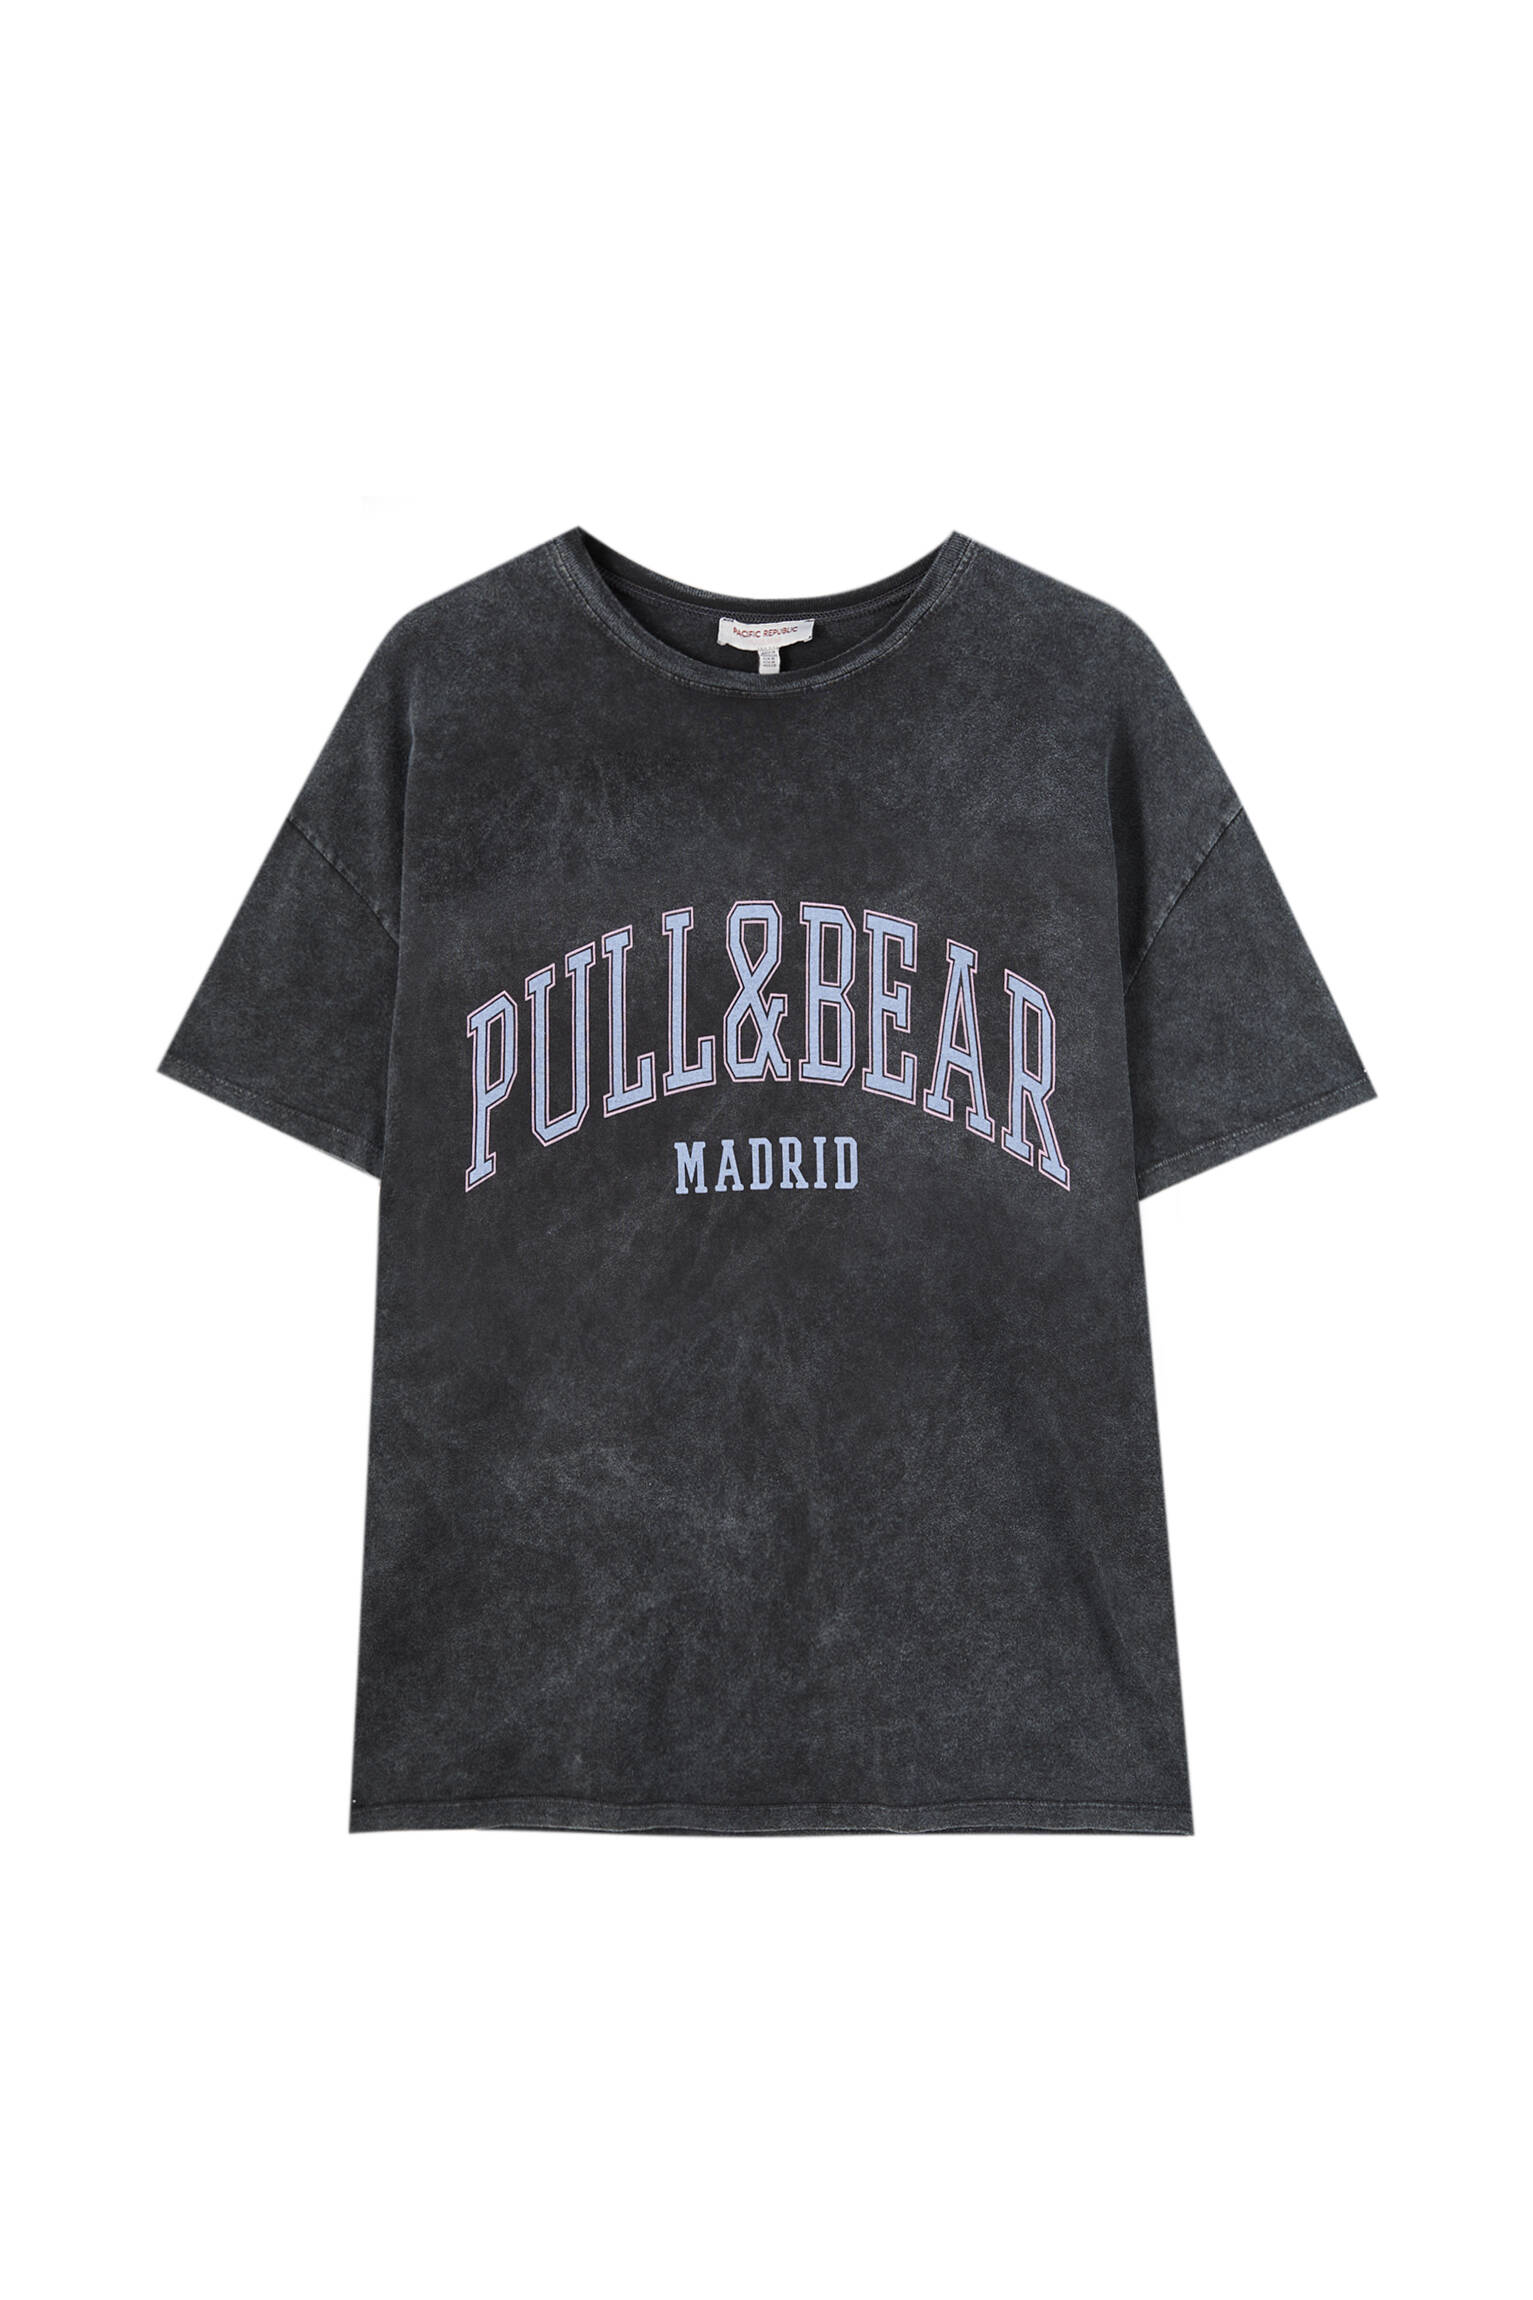 Pull&bear Femme T-shirt 100 % Coton à Col Rond Et Manches Courtes, Avec Logo Pull&bear Et Inscription Madrid Contrastante Sur La Poitrine. Noir DÉlavÉ M